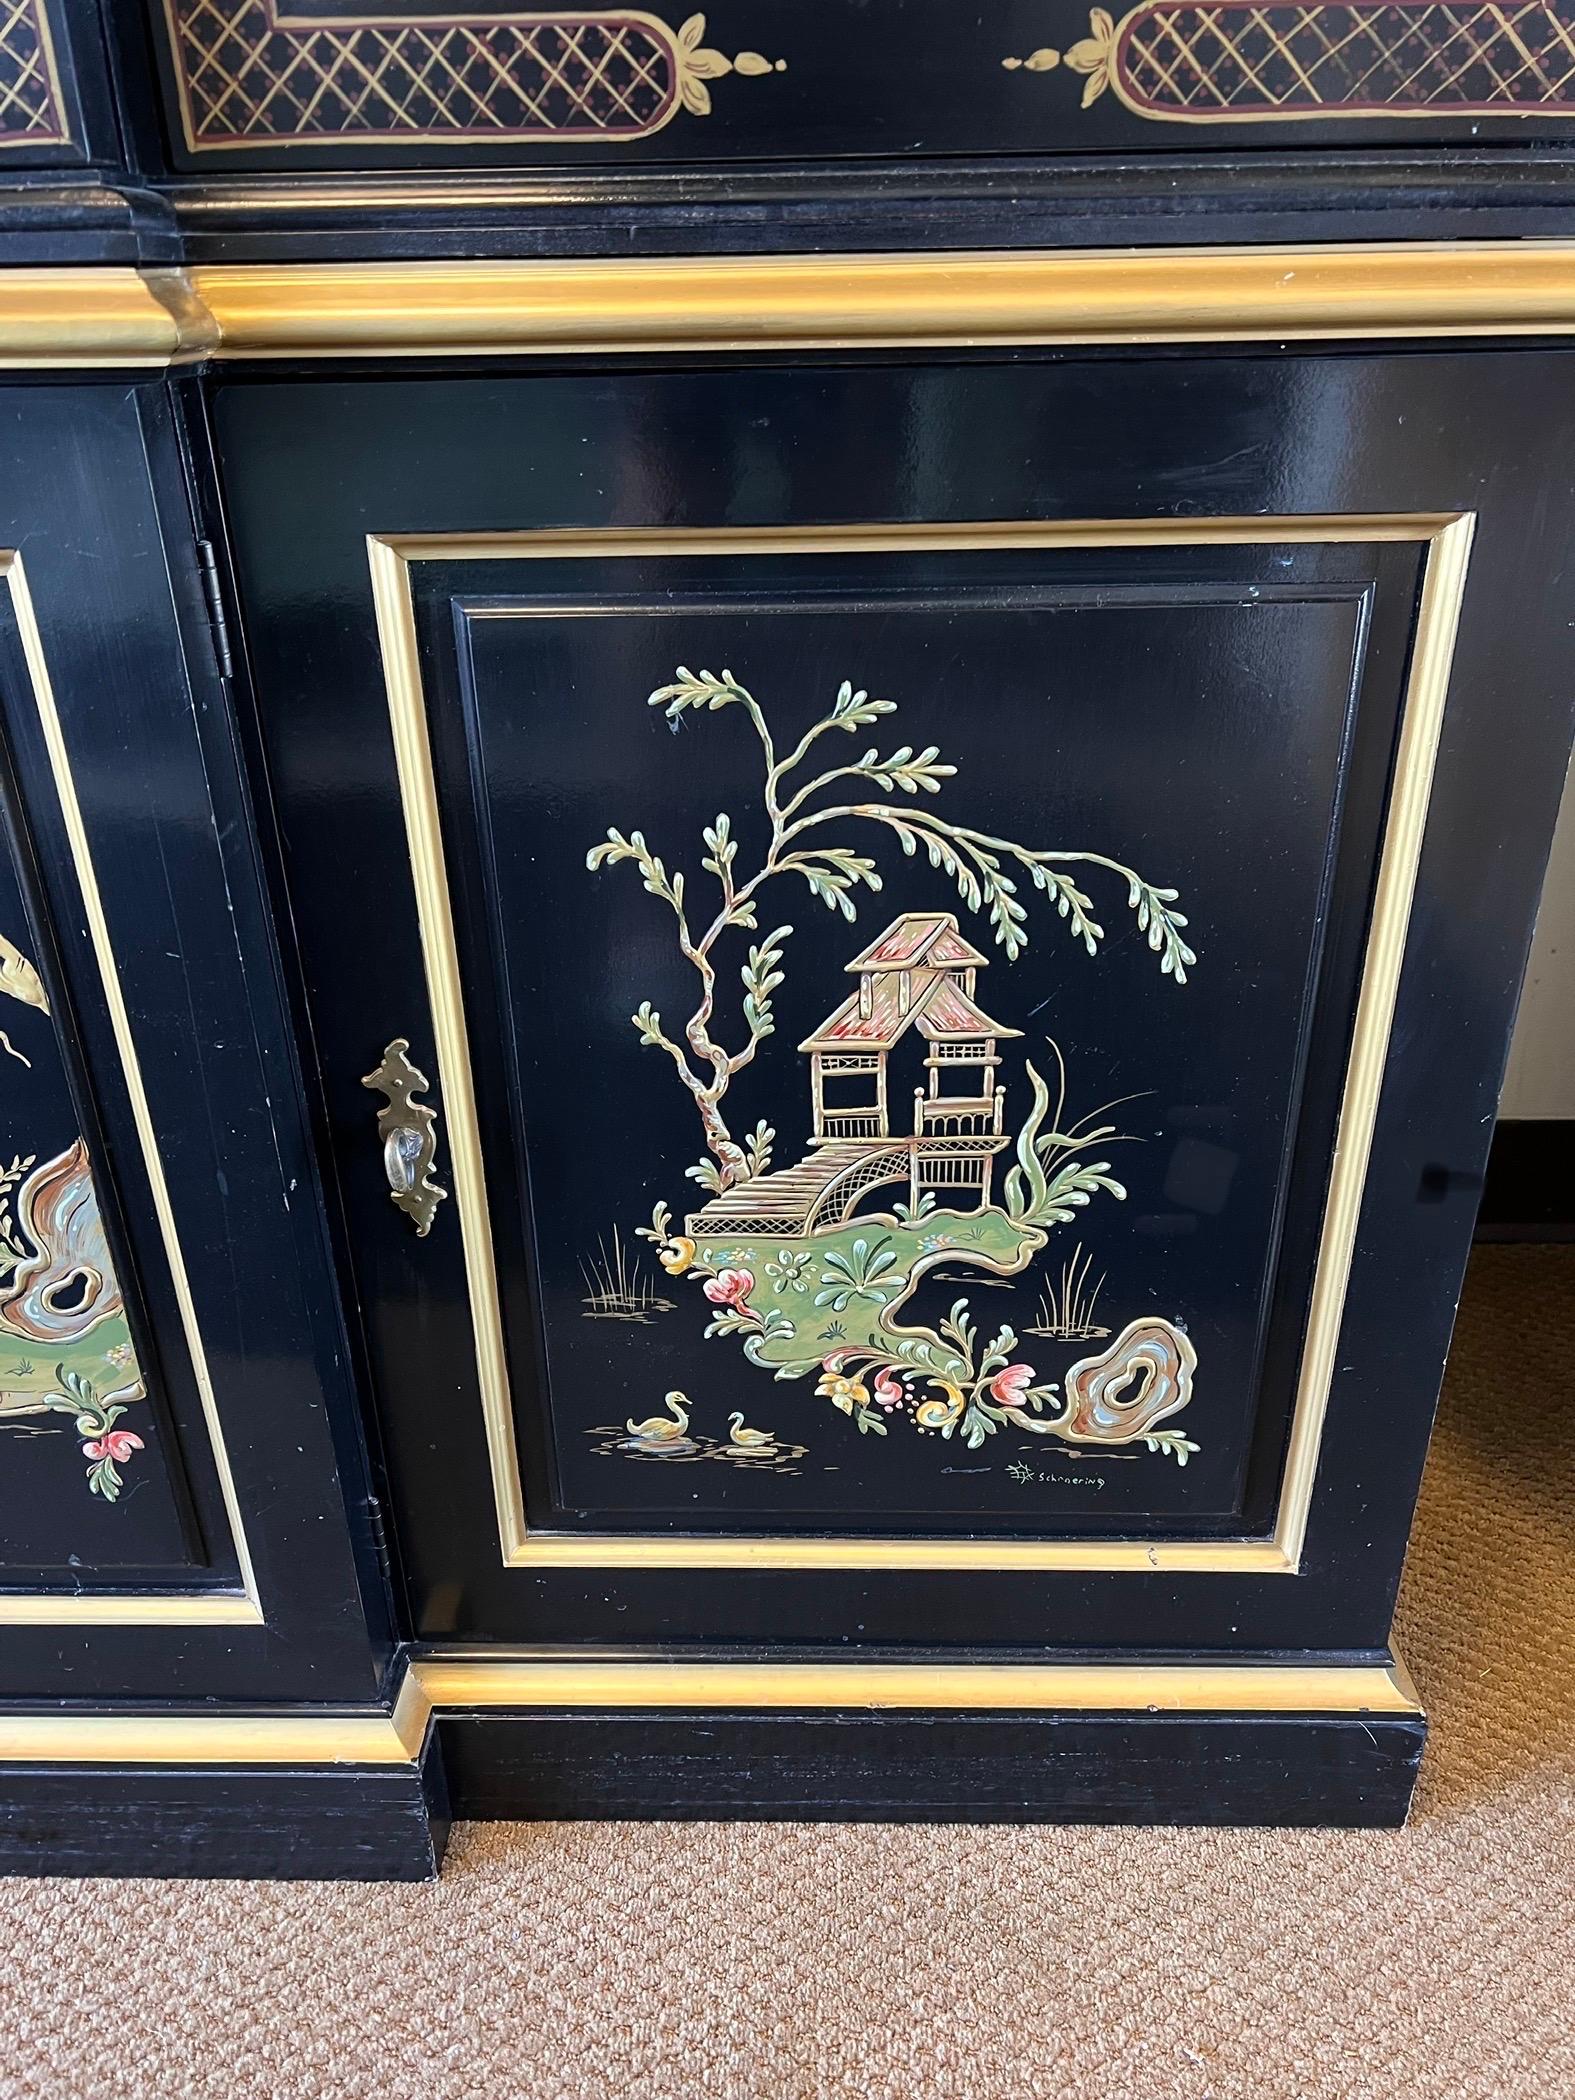 Ce vaisselier en laque noire est richement décoré de motifs de chinoiserie peints à la main et témoigne de l'excellence de l'artisanat chinois.
La partie supérieure comporte des étagères en verre amovibles et des lampes d'exposition, offrant ainsi